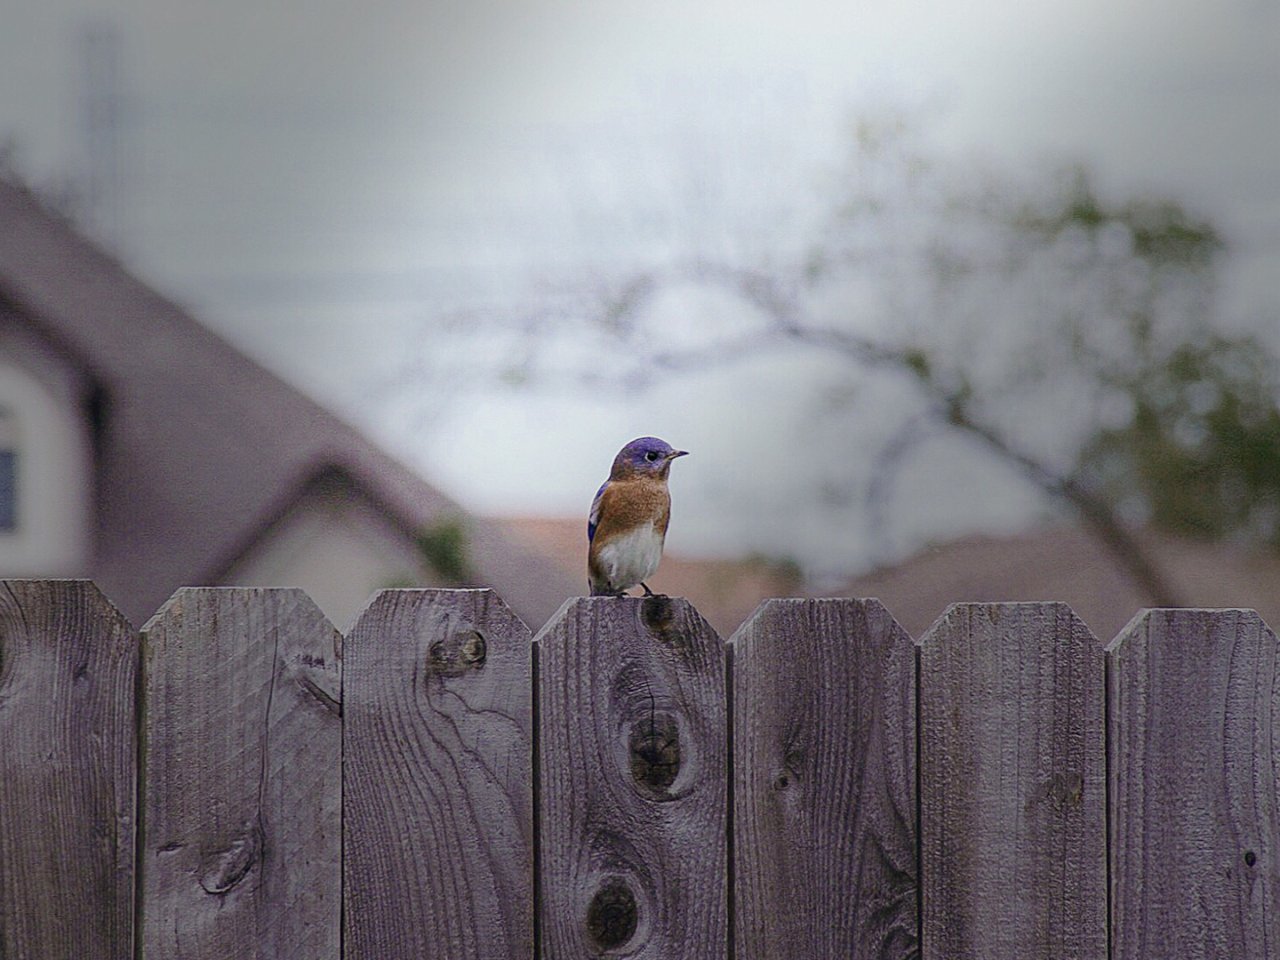 后院蹲着拍：最靓的仔 最萌的蓝小鸟🤣...